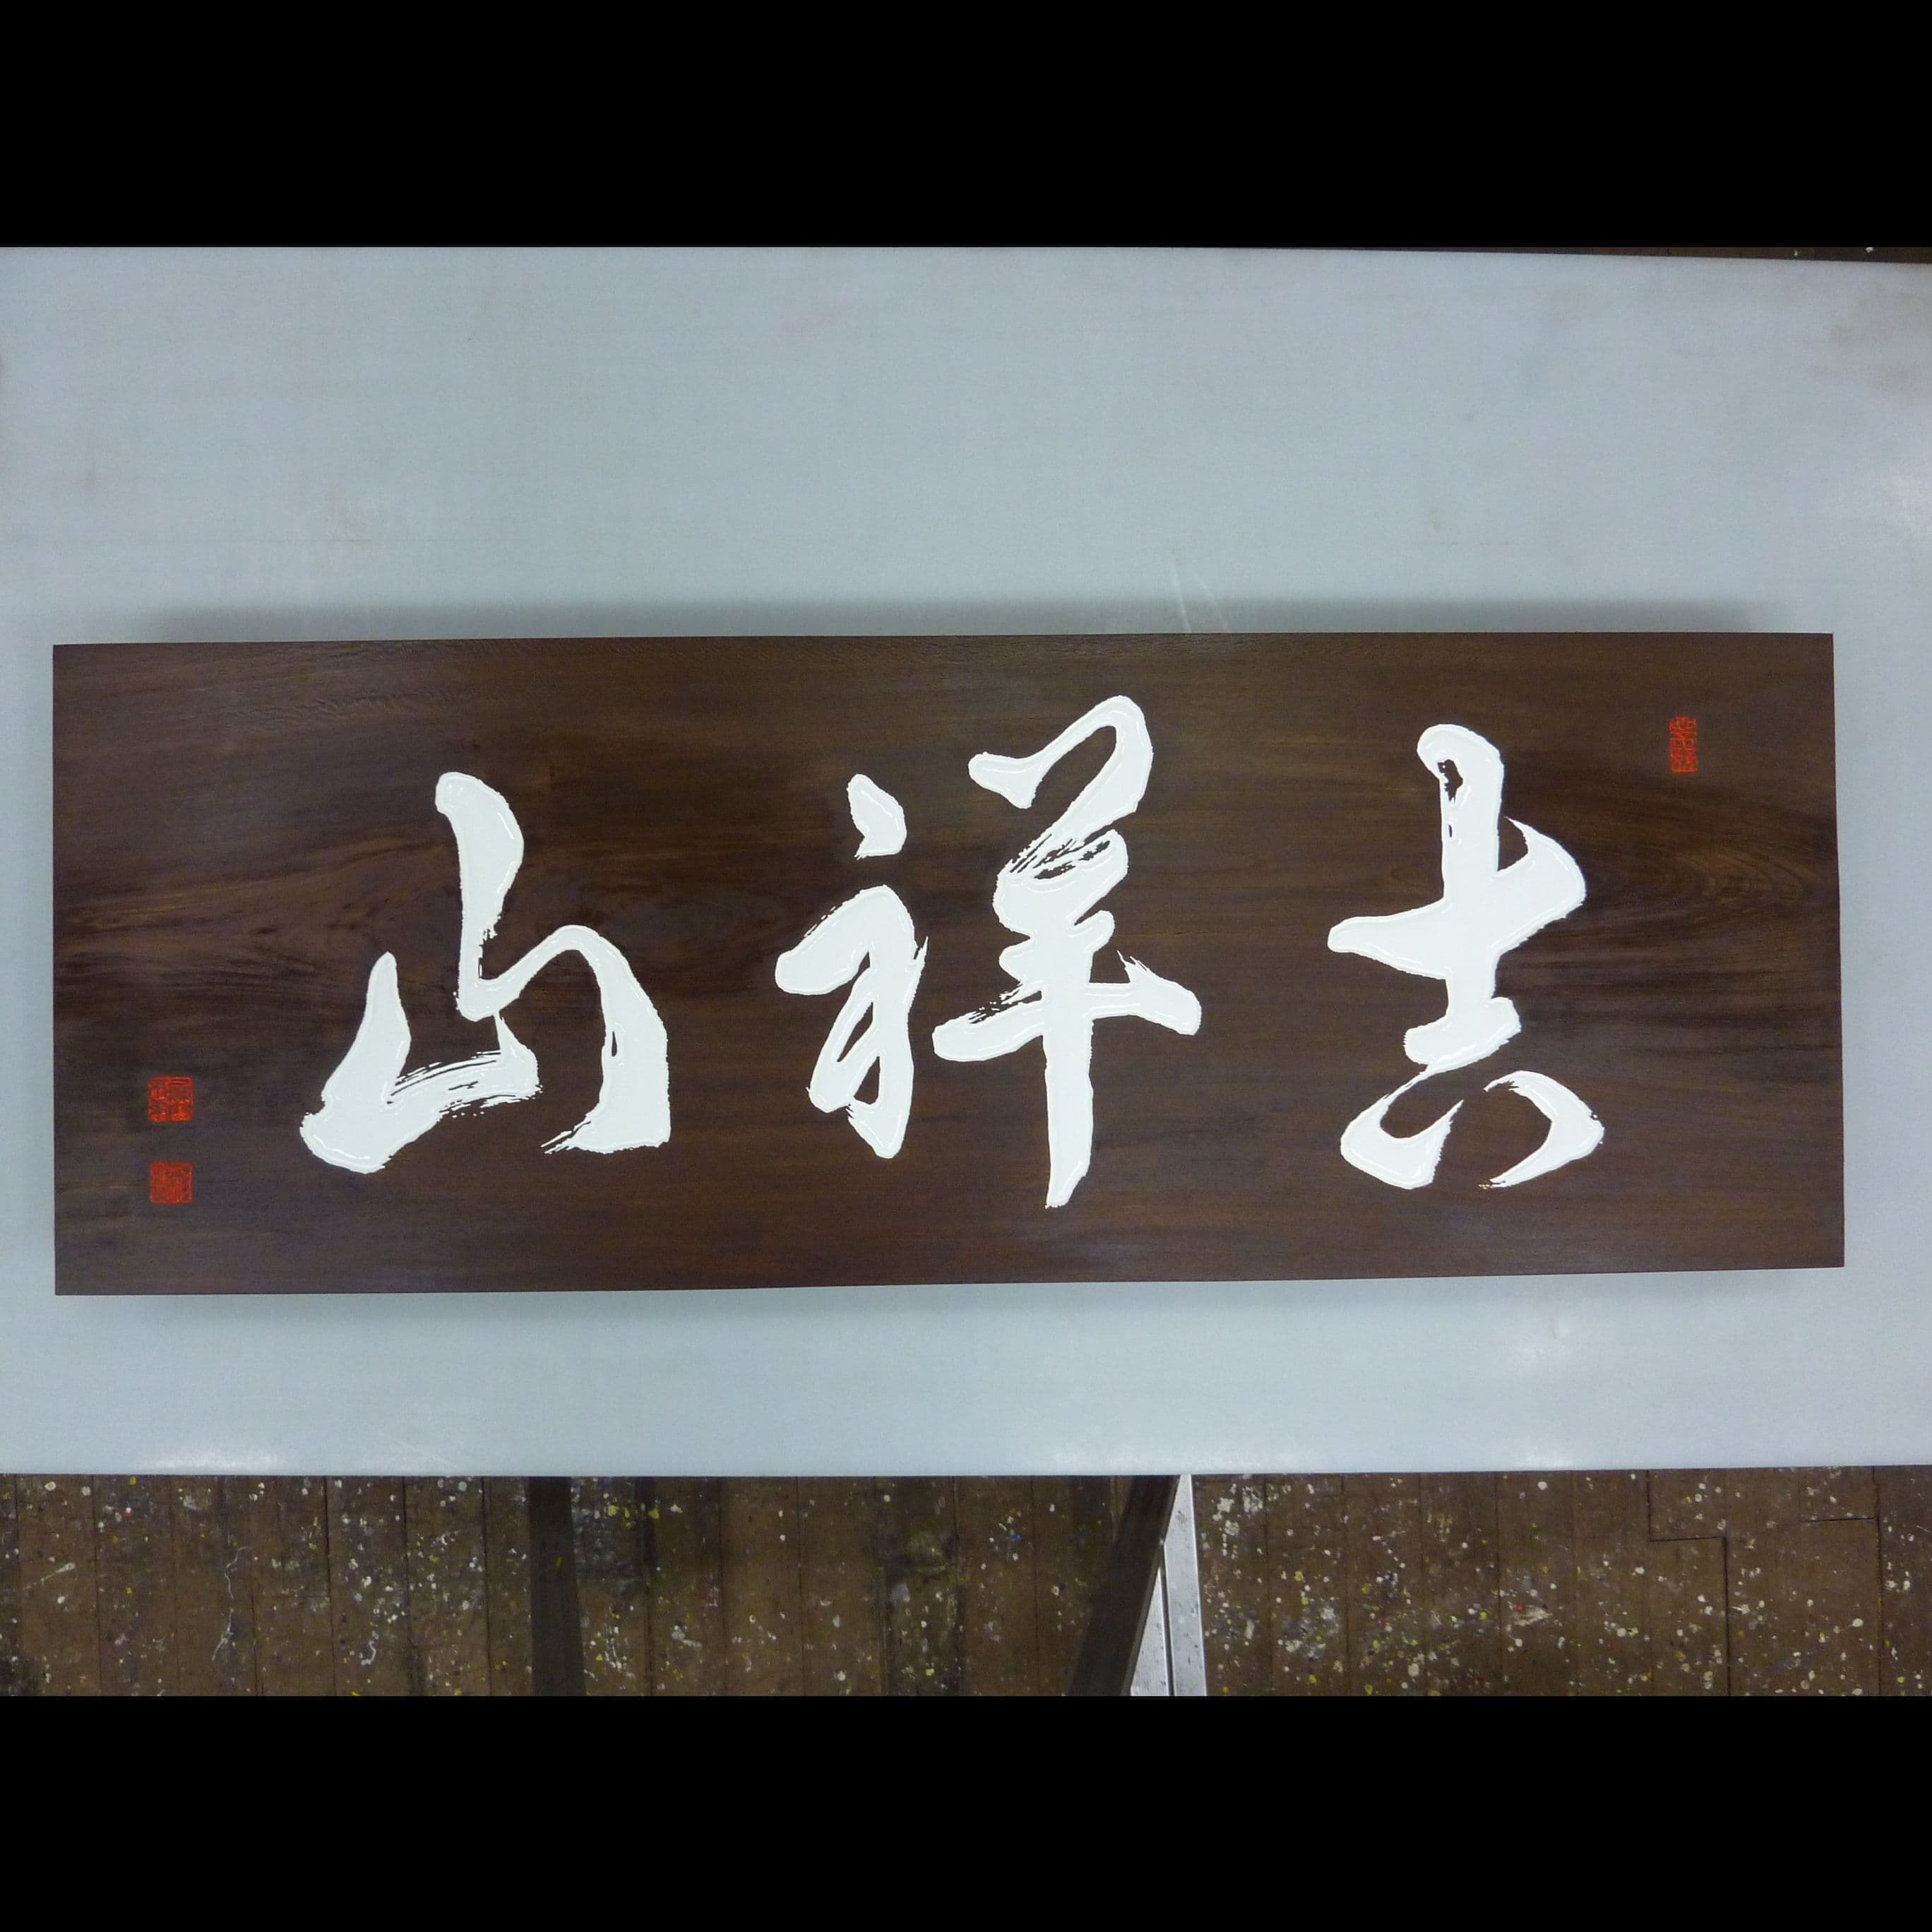 濃い色の木の板に白い文字の山号額、お寺の看板